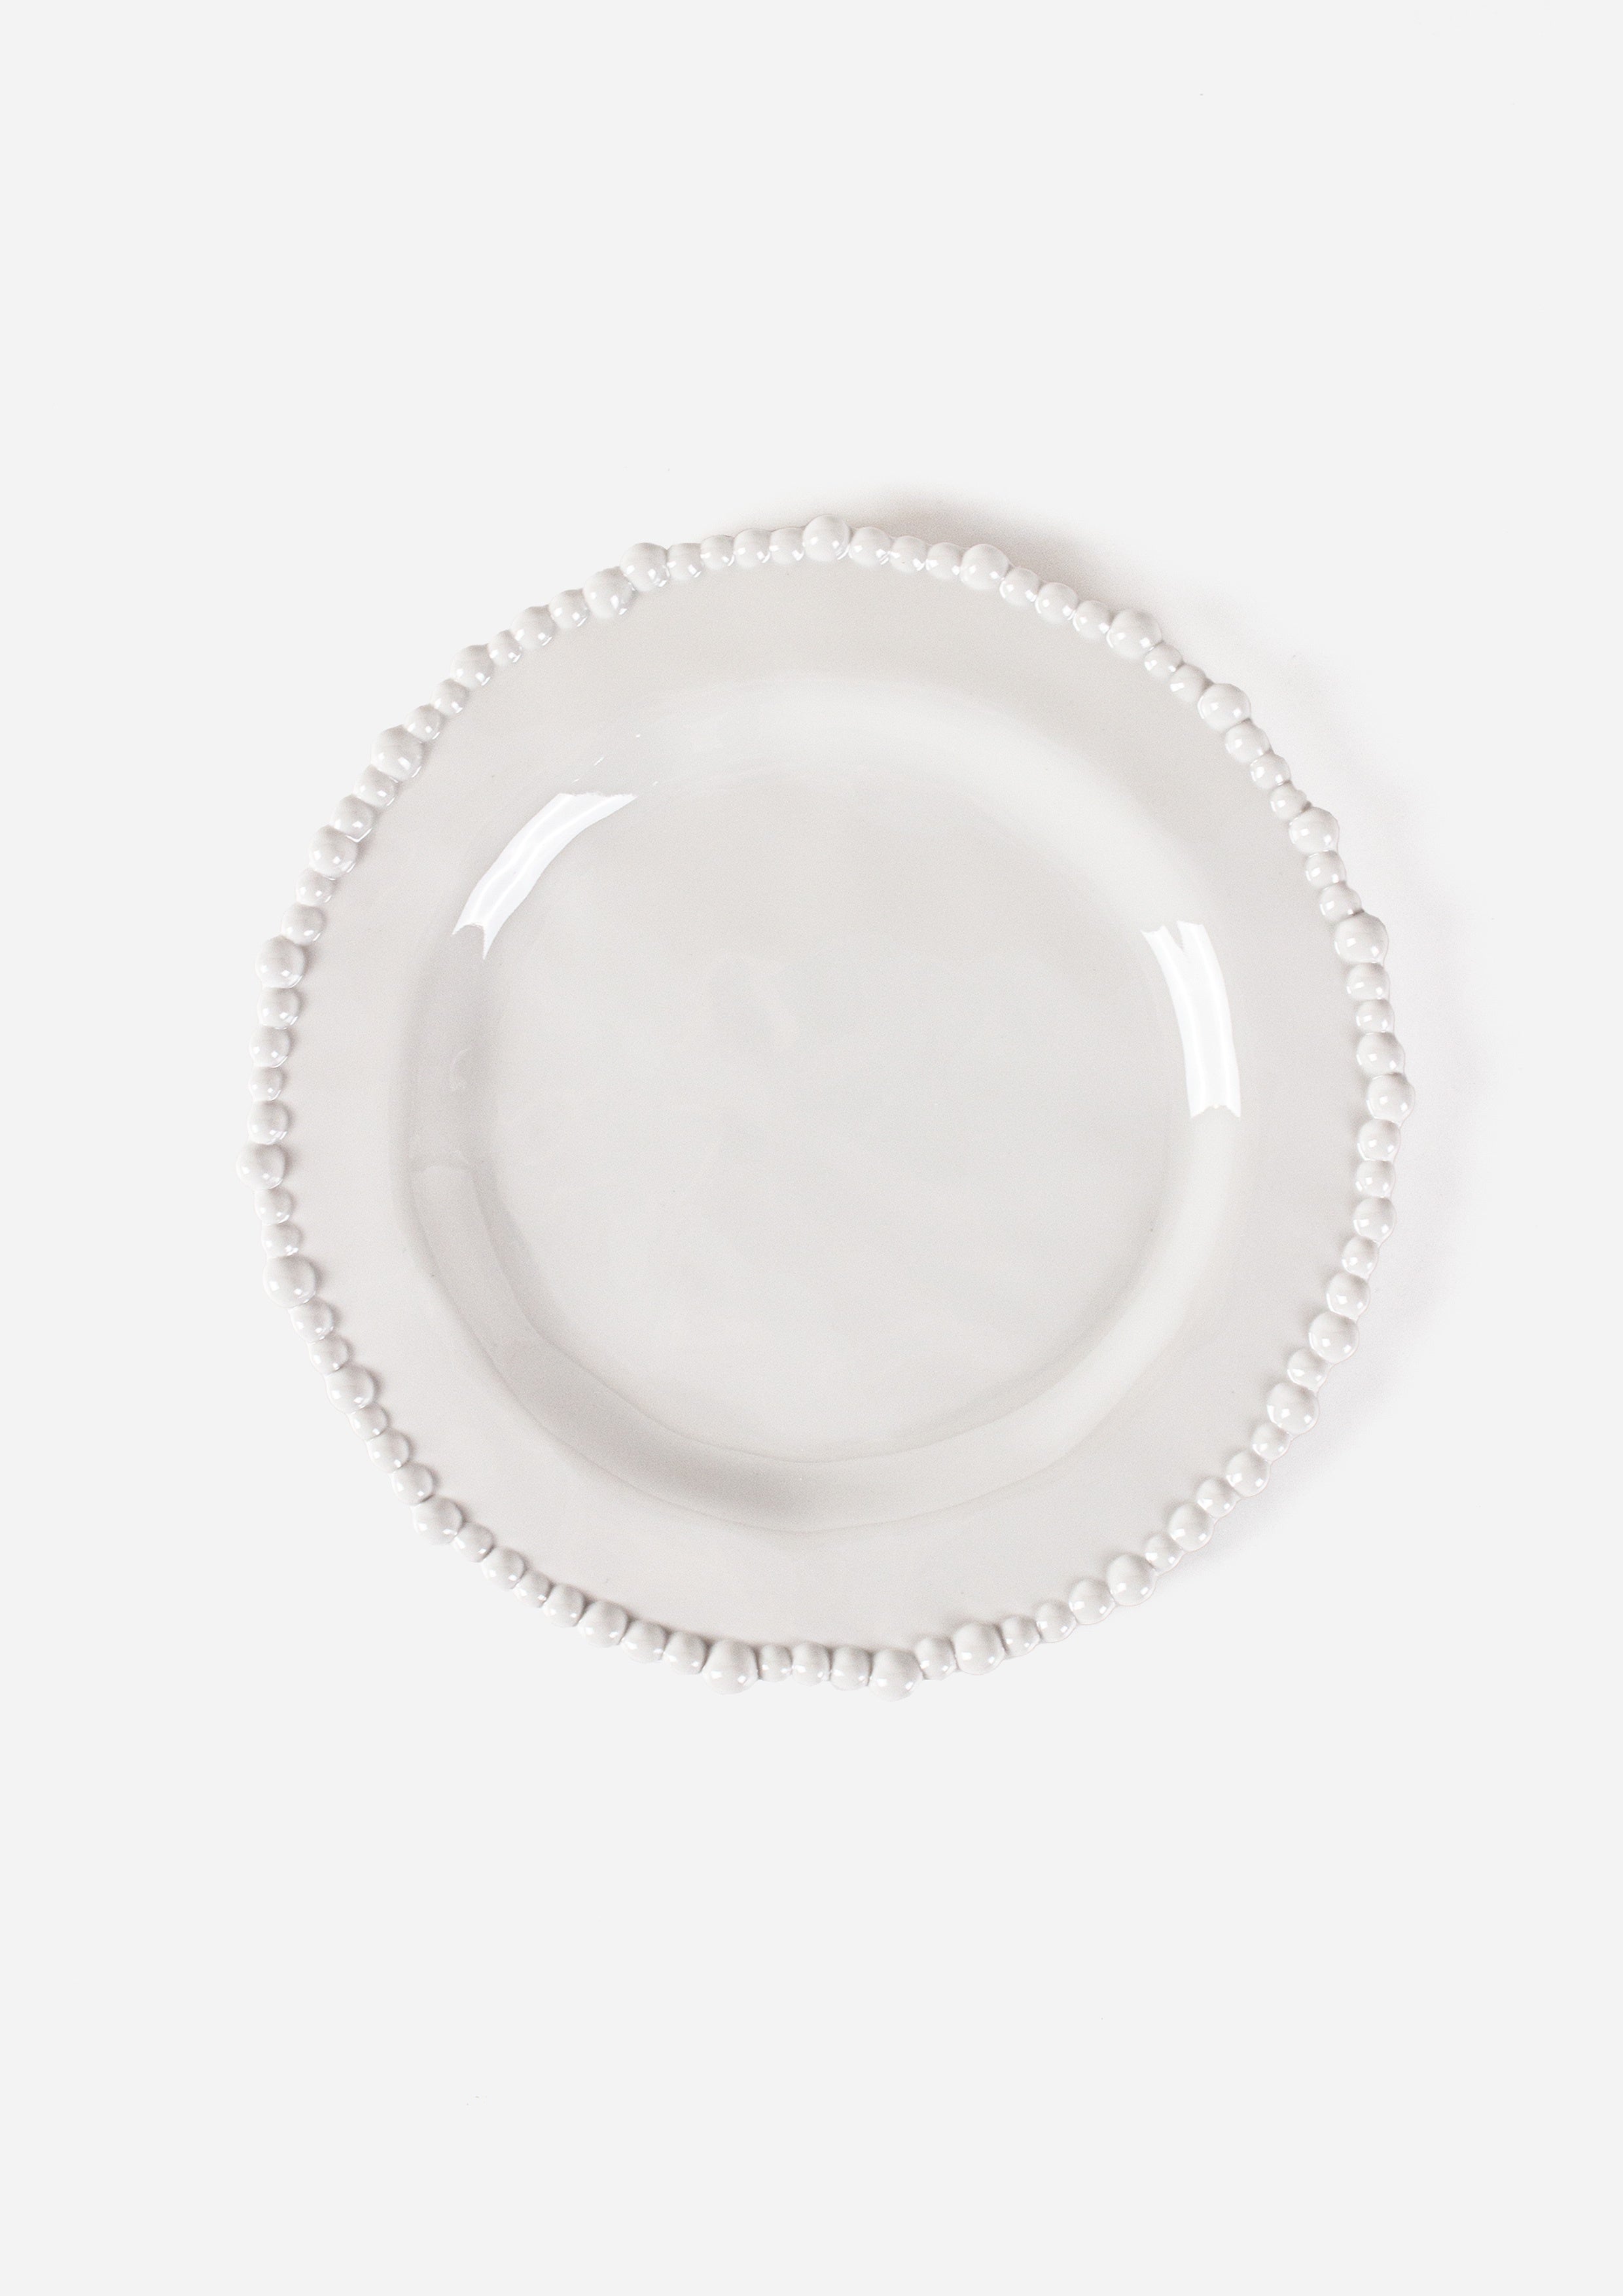 Pearl Dinner Plate.